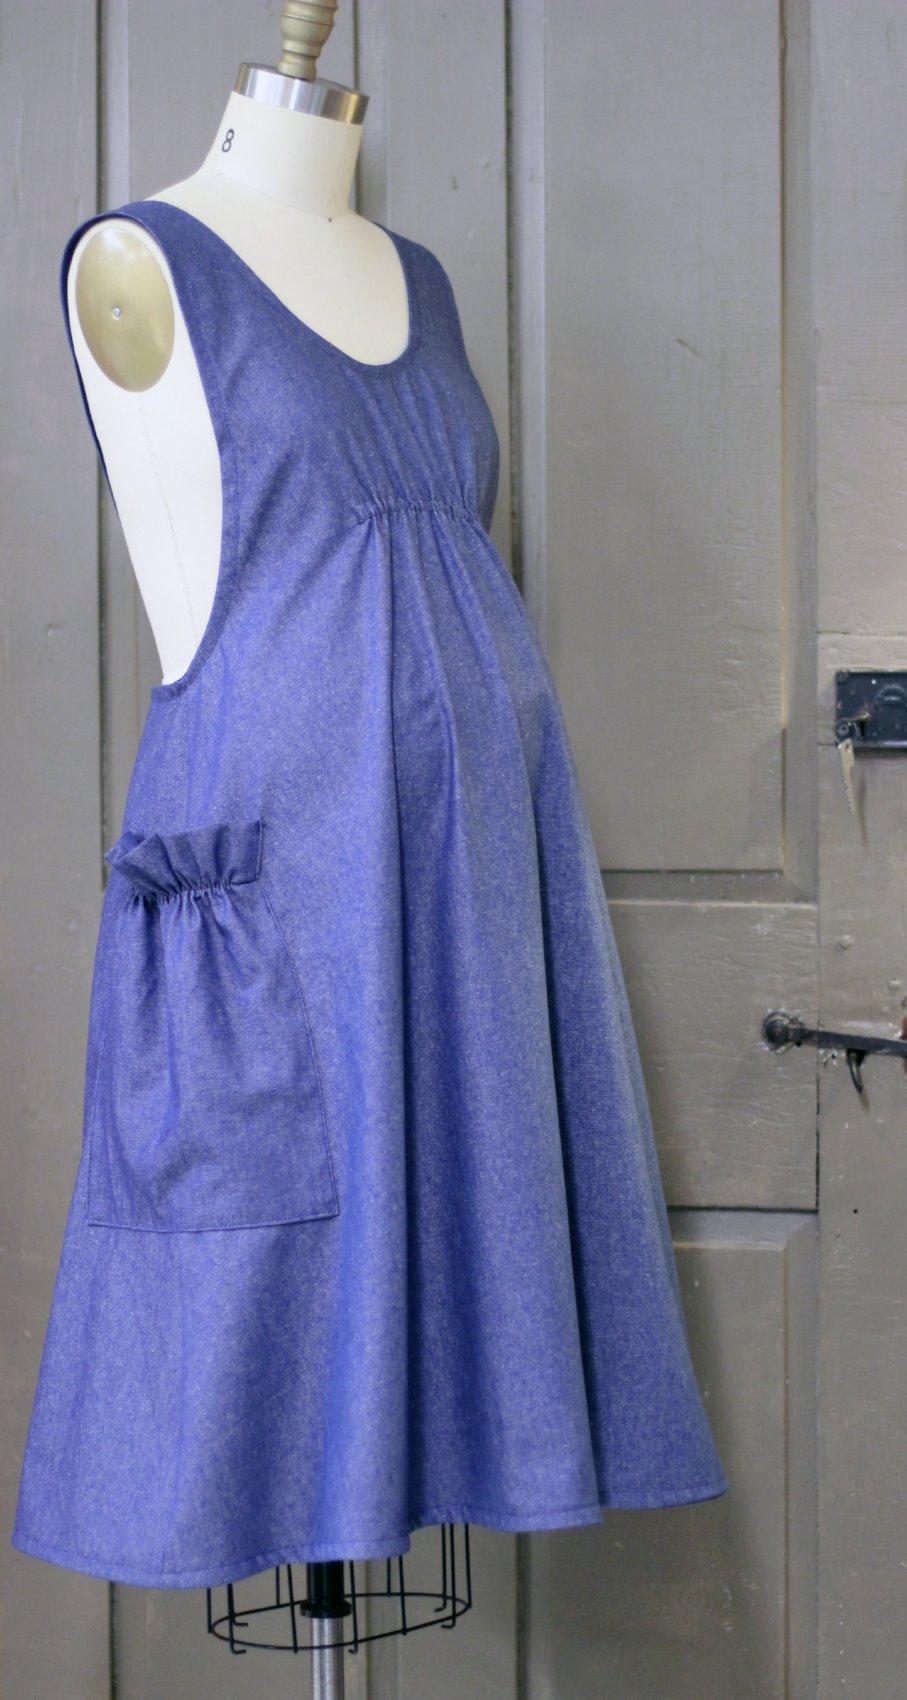 Rosa Hospital Gown Denim Blue – Everly Grey